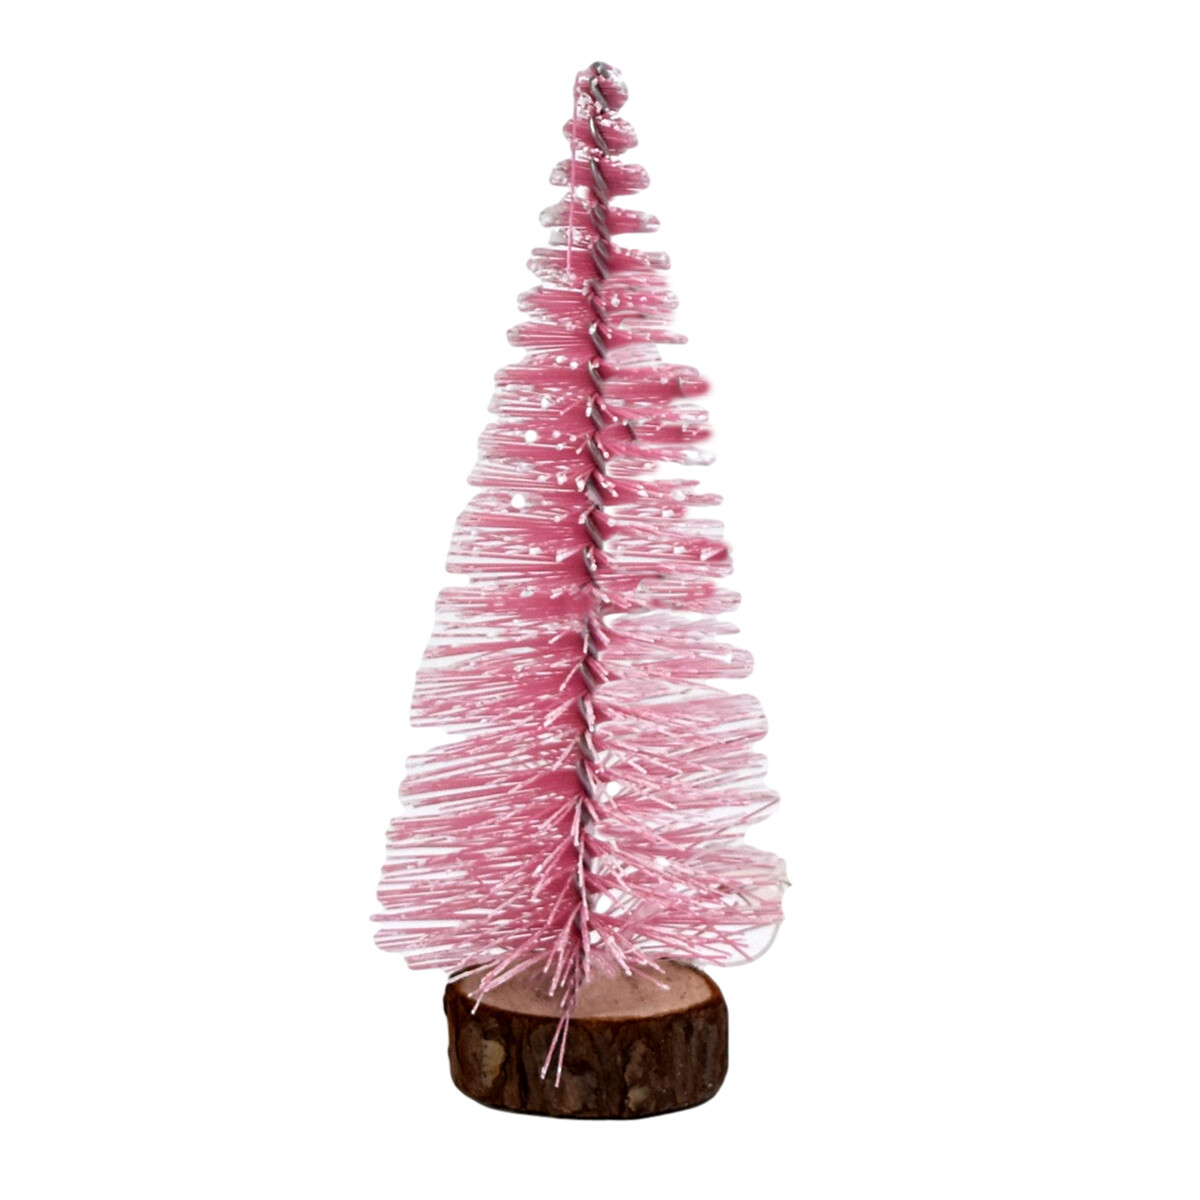 Arbol navideño de escritorio rosado con base de madera 